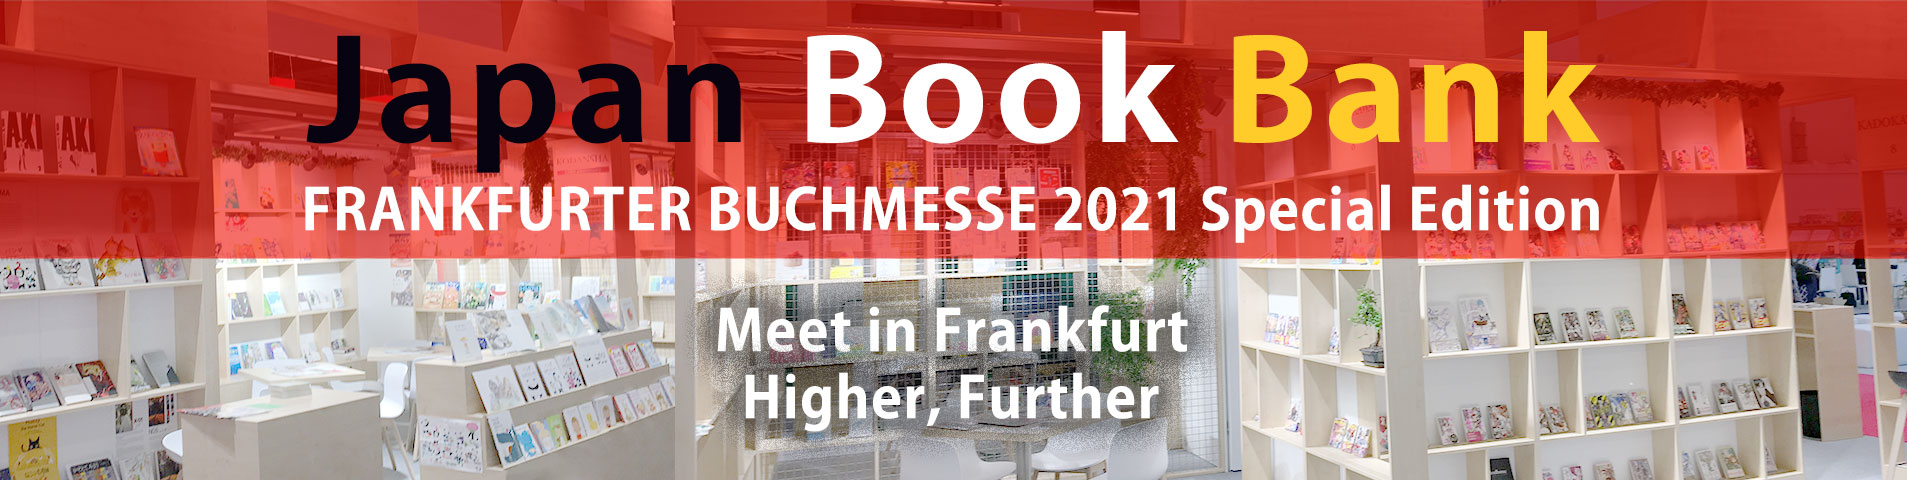 フランクフルトブックフェア連動企画「Meet in Frankfurt : Higher, Further」